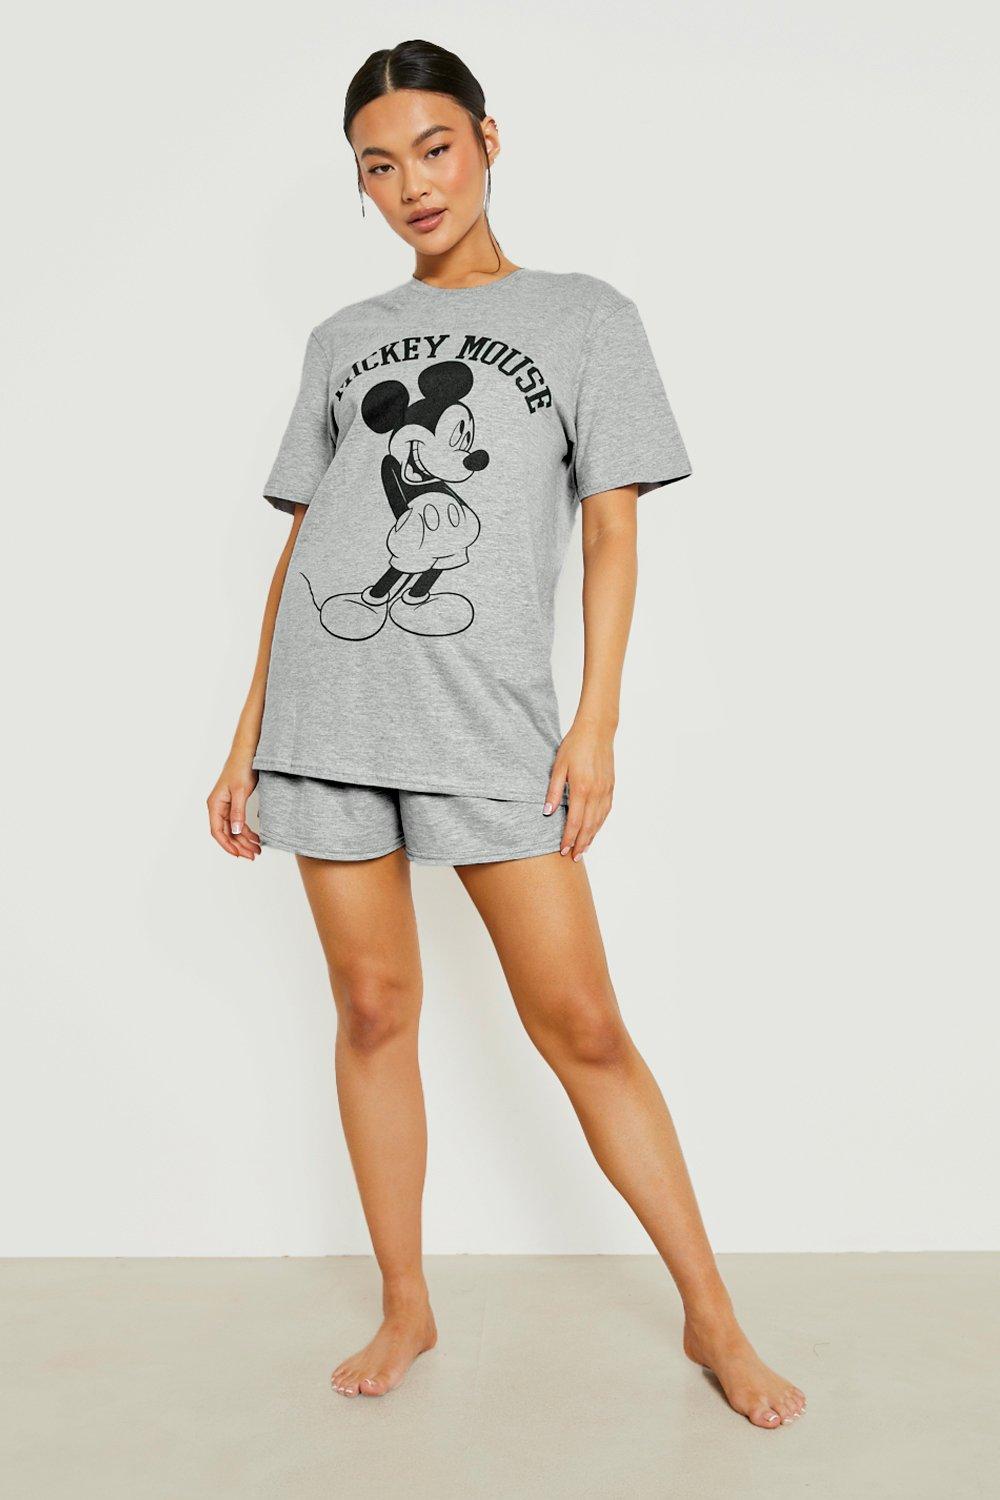 DISNEY - Pijama gris Micky Mouse Mujer